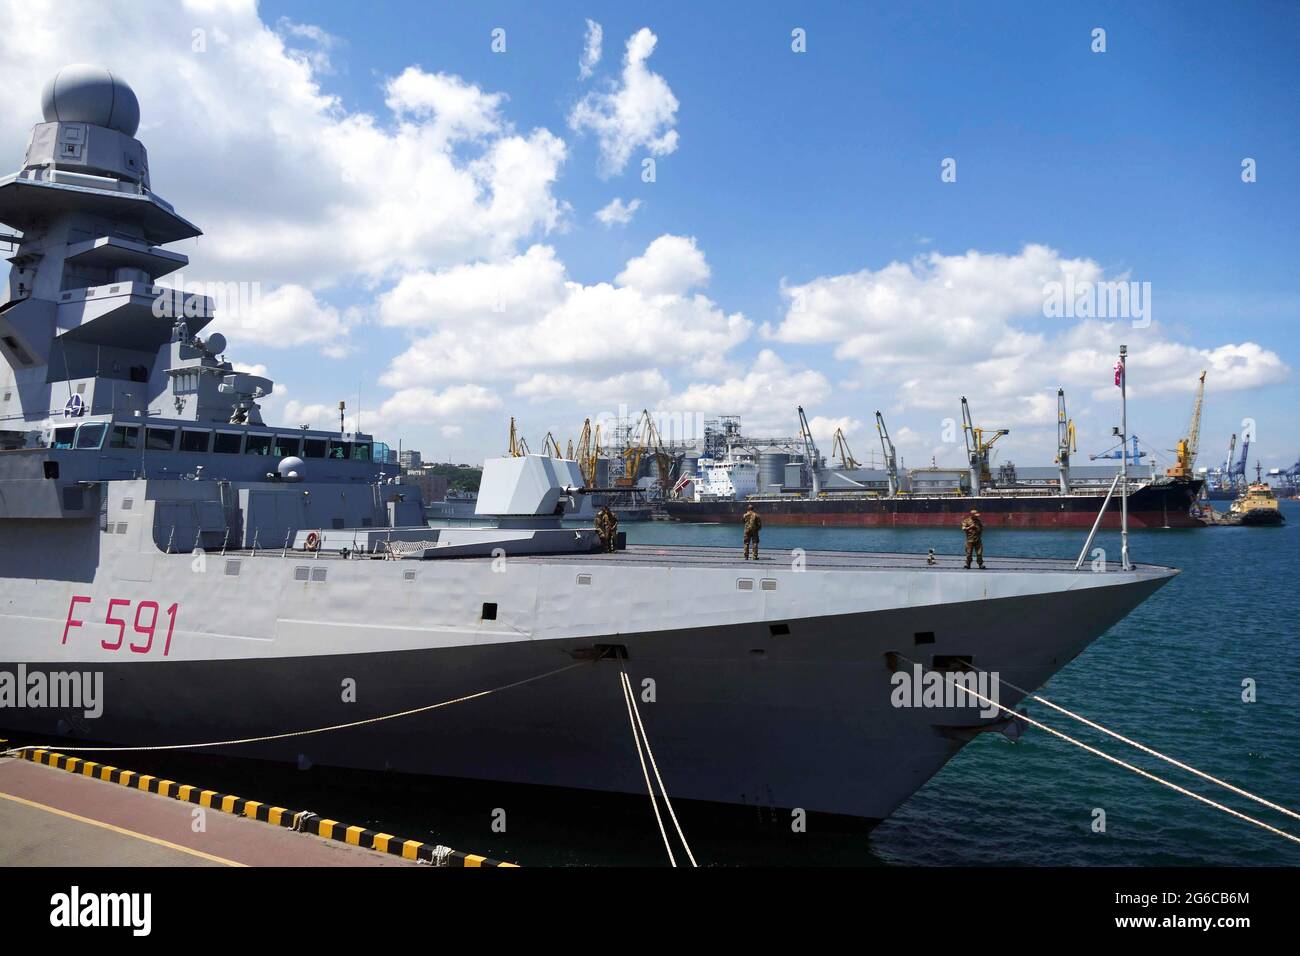 ODESA, UCRANIA - 3 DE JULIO de 2021 - La fragata F591 de la Marina Italiana, Virginio Fasan, está representada en el puerto de Odesa, al sur de Ucrania. Foto de stock